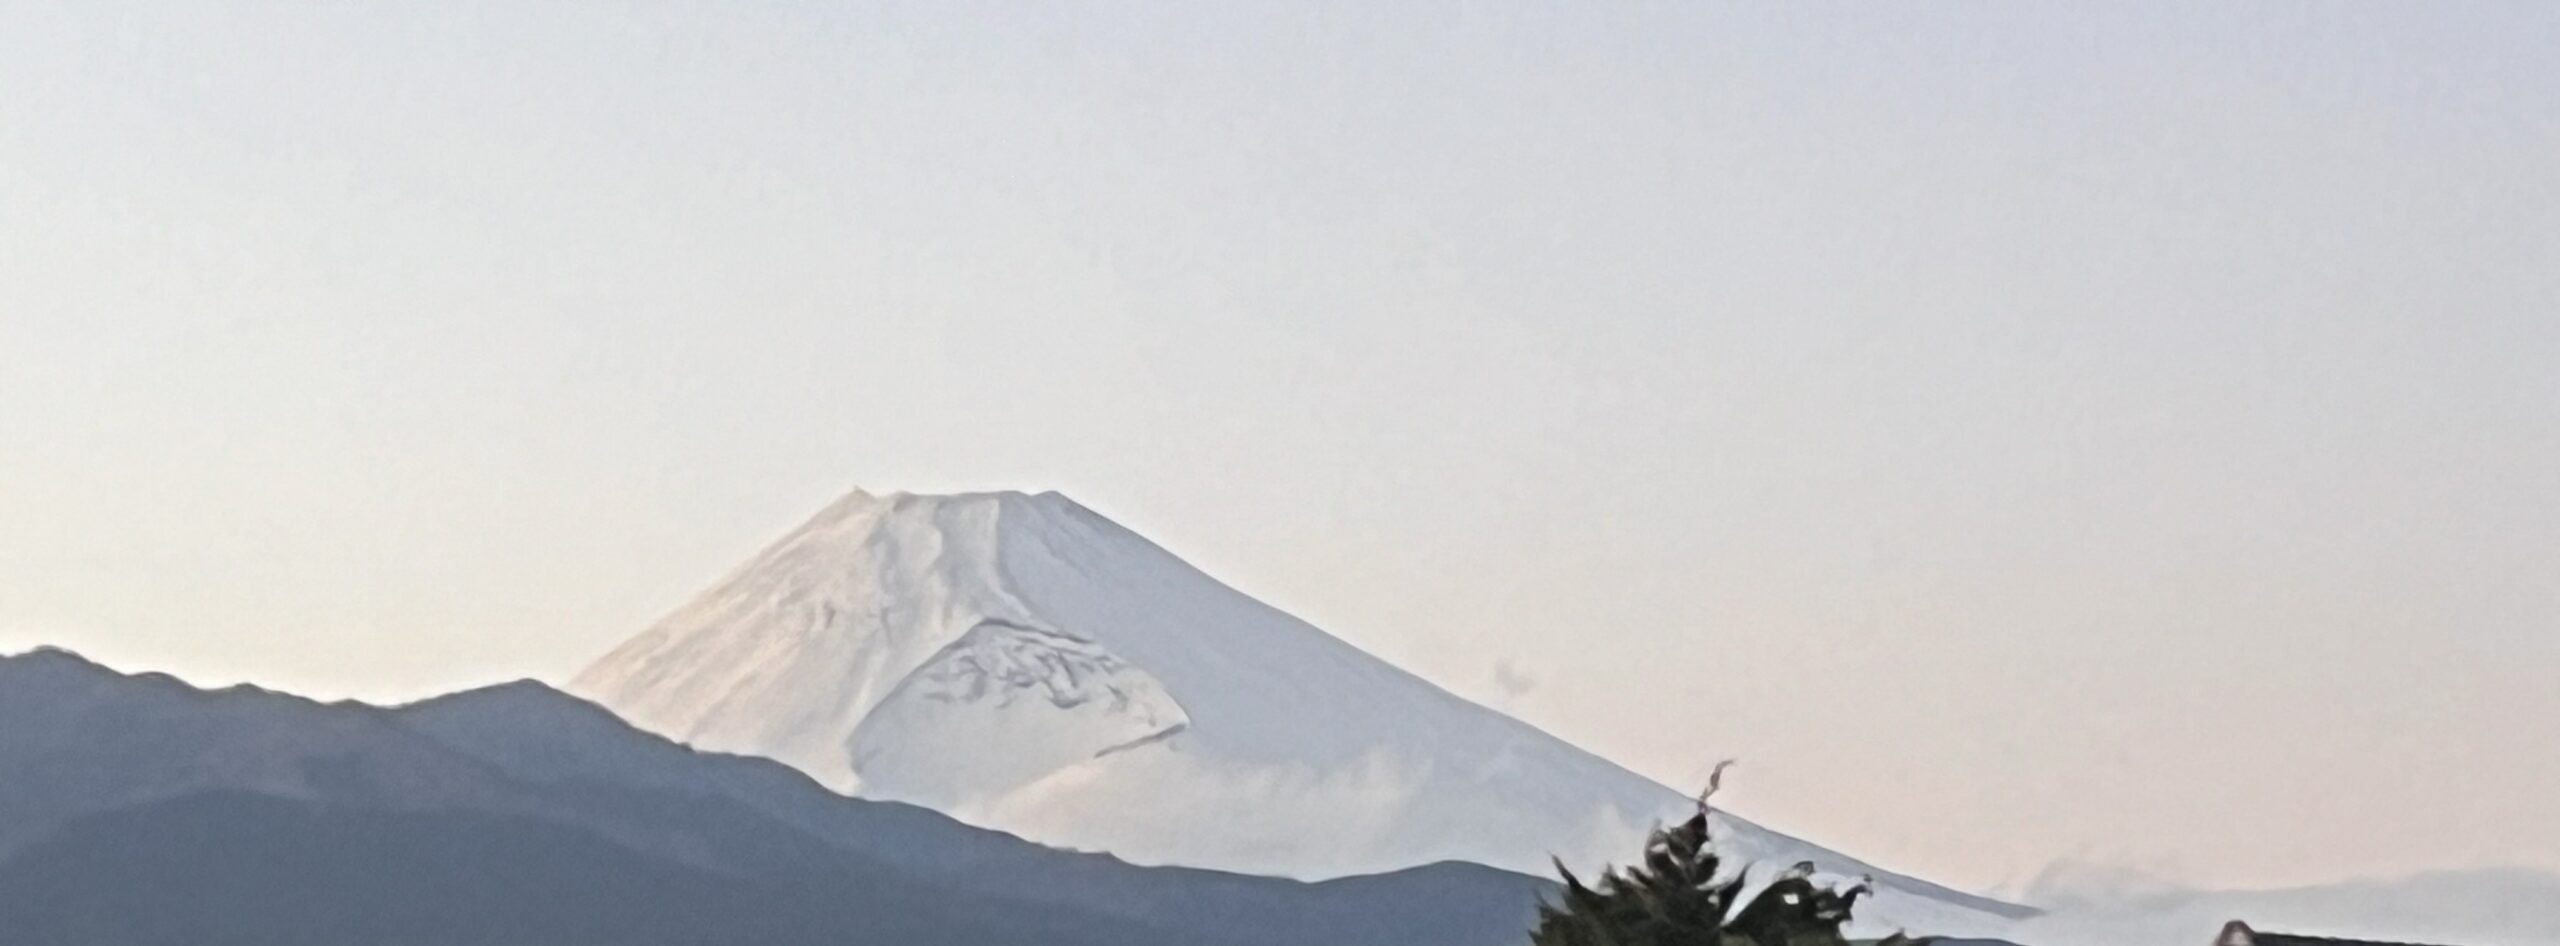 遮るものなし。富士山絶景の穴場スポット「鎧ヶ淵大橋」